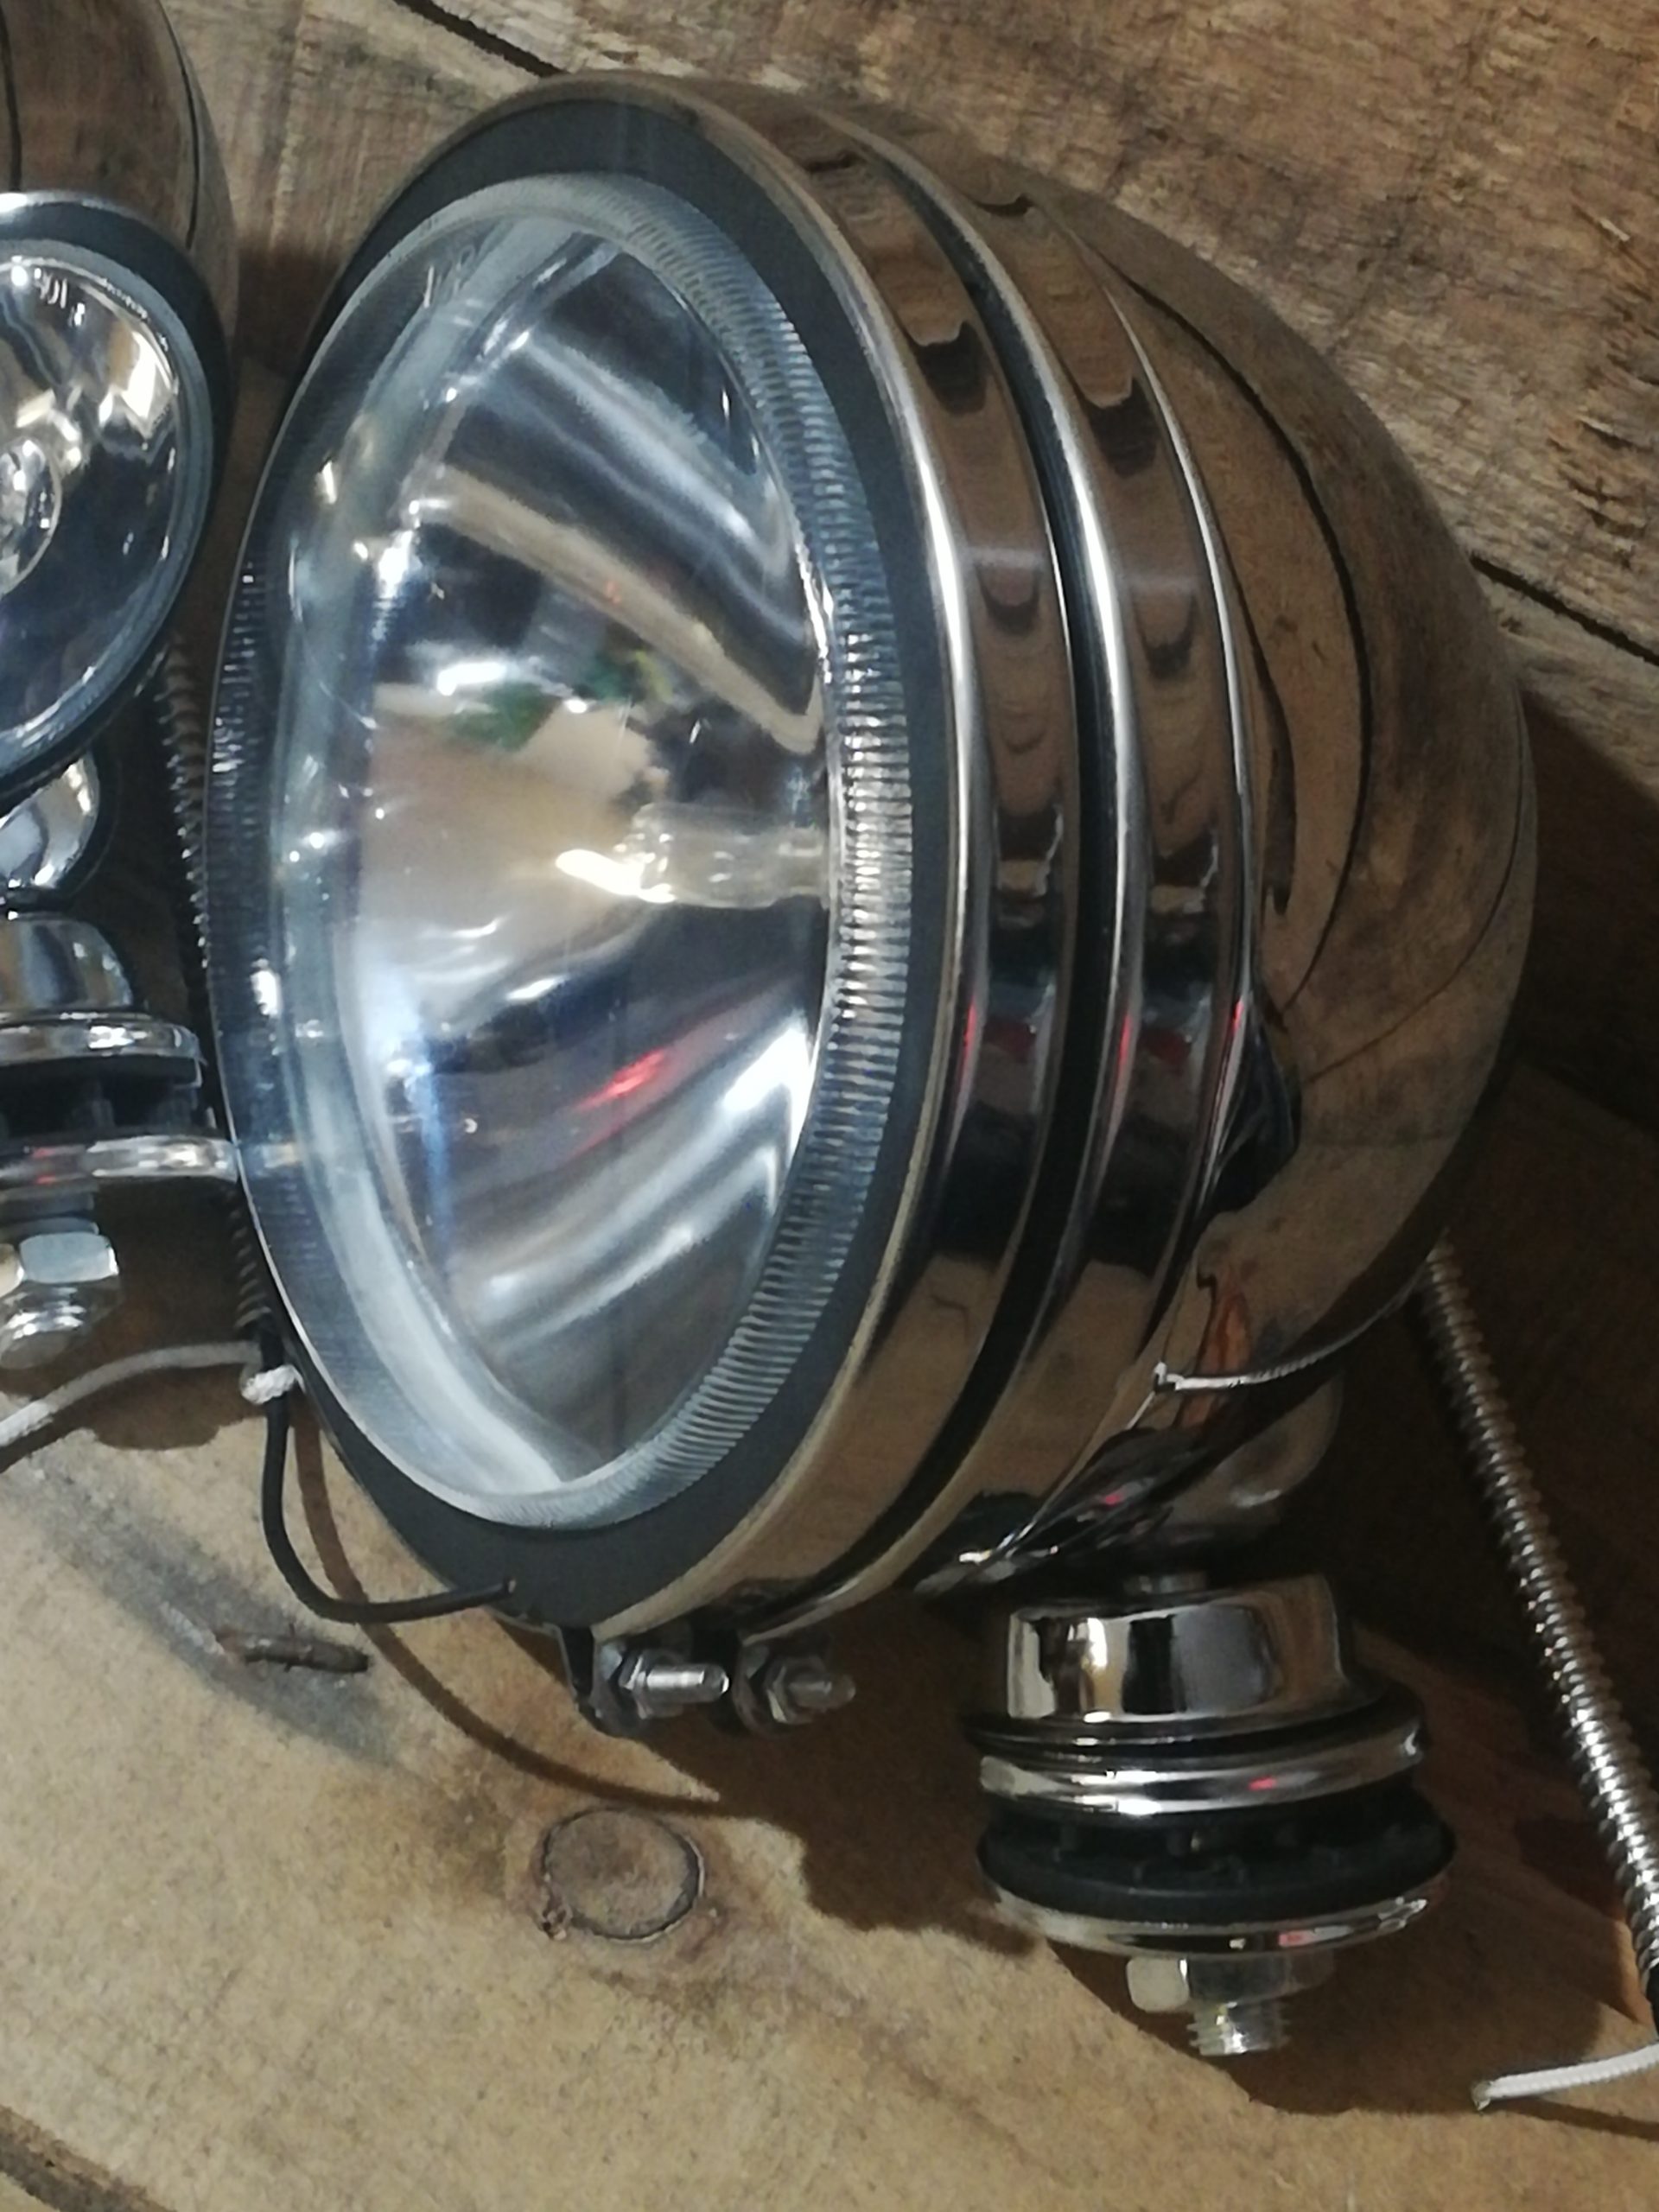 2 x H3 160mm Offroad Zusatz Arbeits Scheinwerfer Chrom Licht Lampe